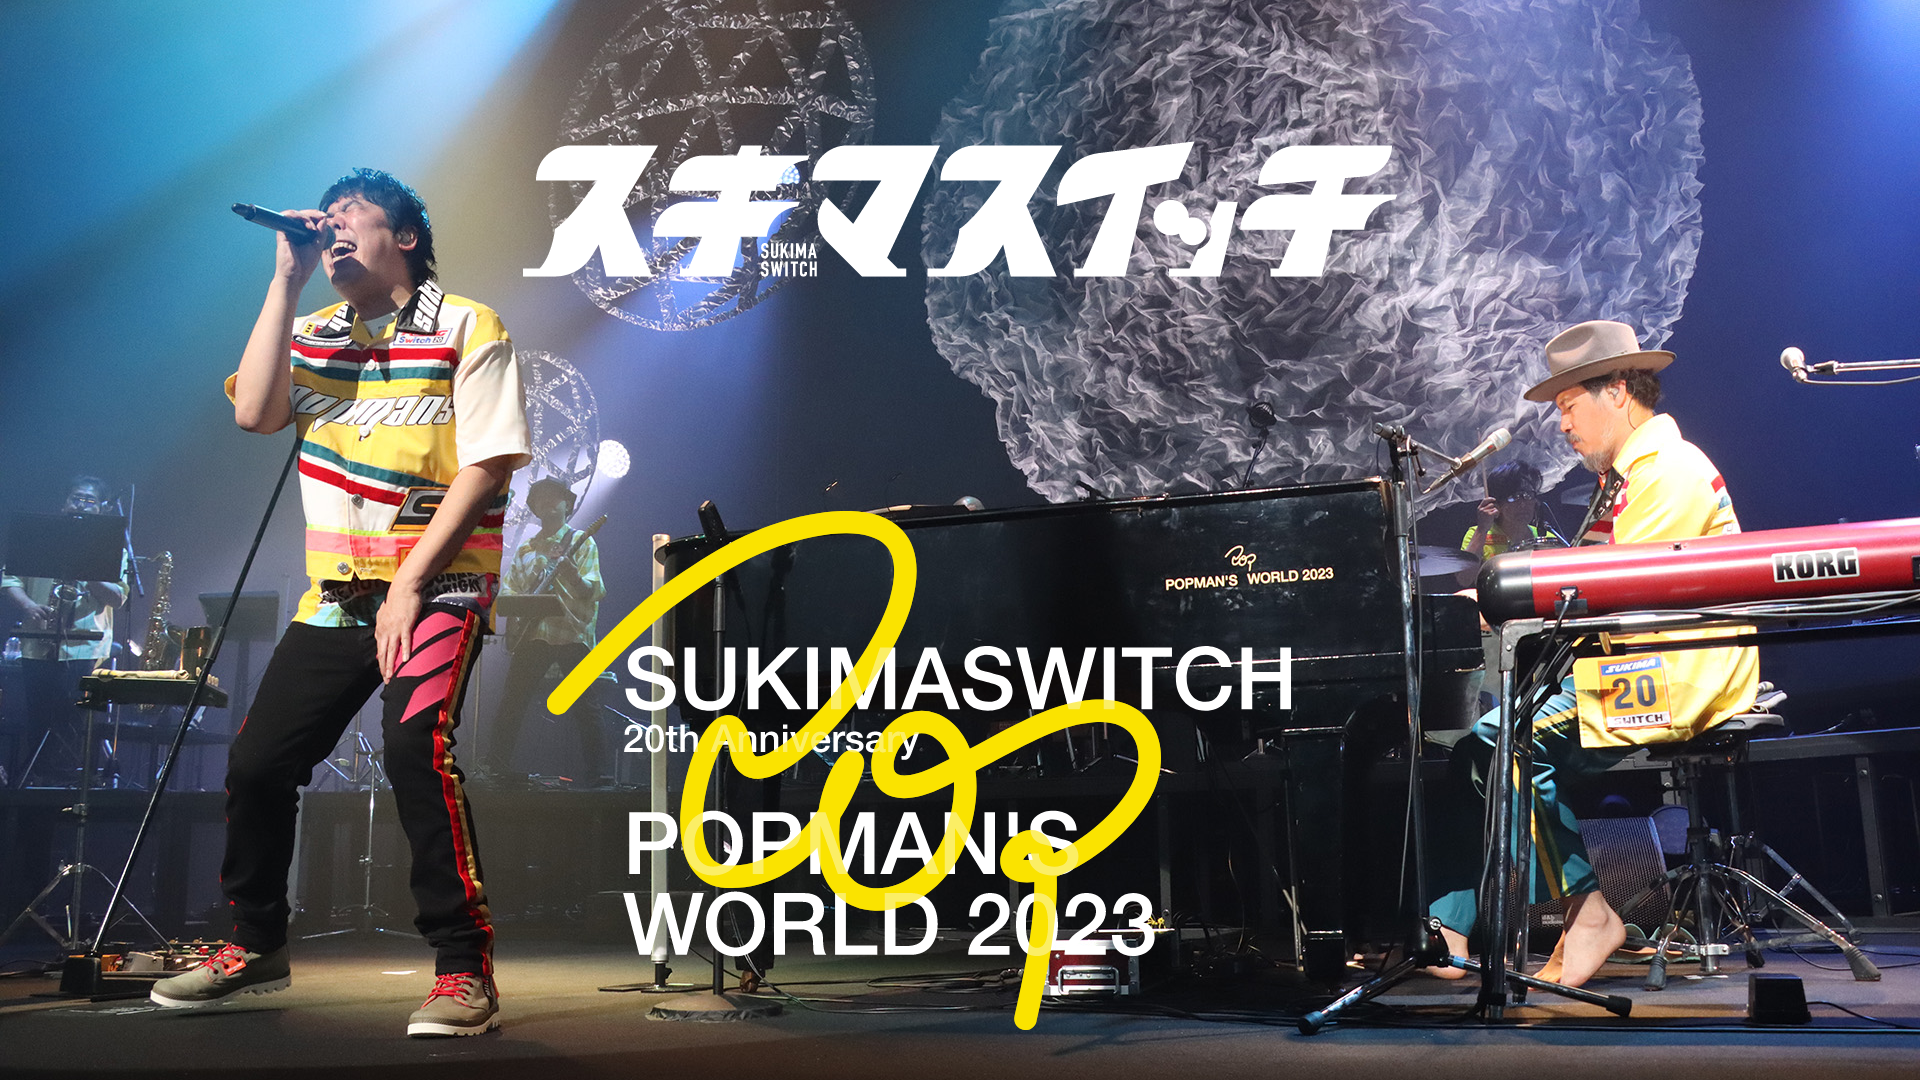 スキマスイッチ 20th ANNIVERSARY”POPMAN’S WORLD 2023”